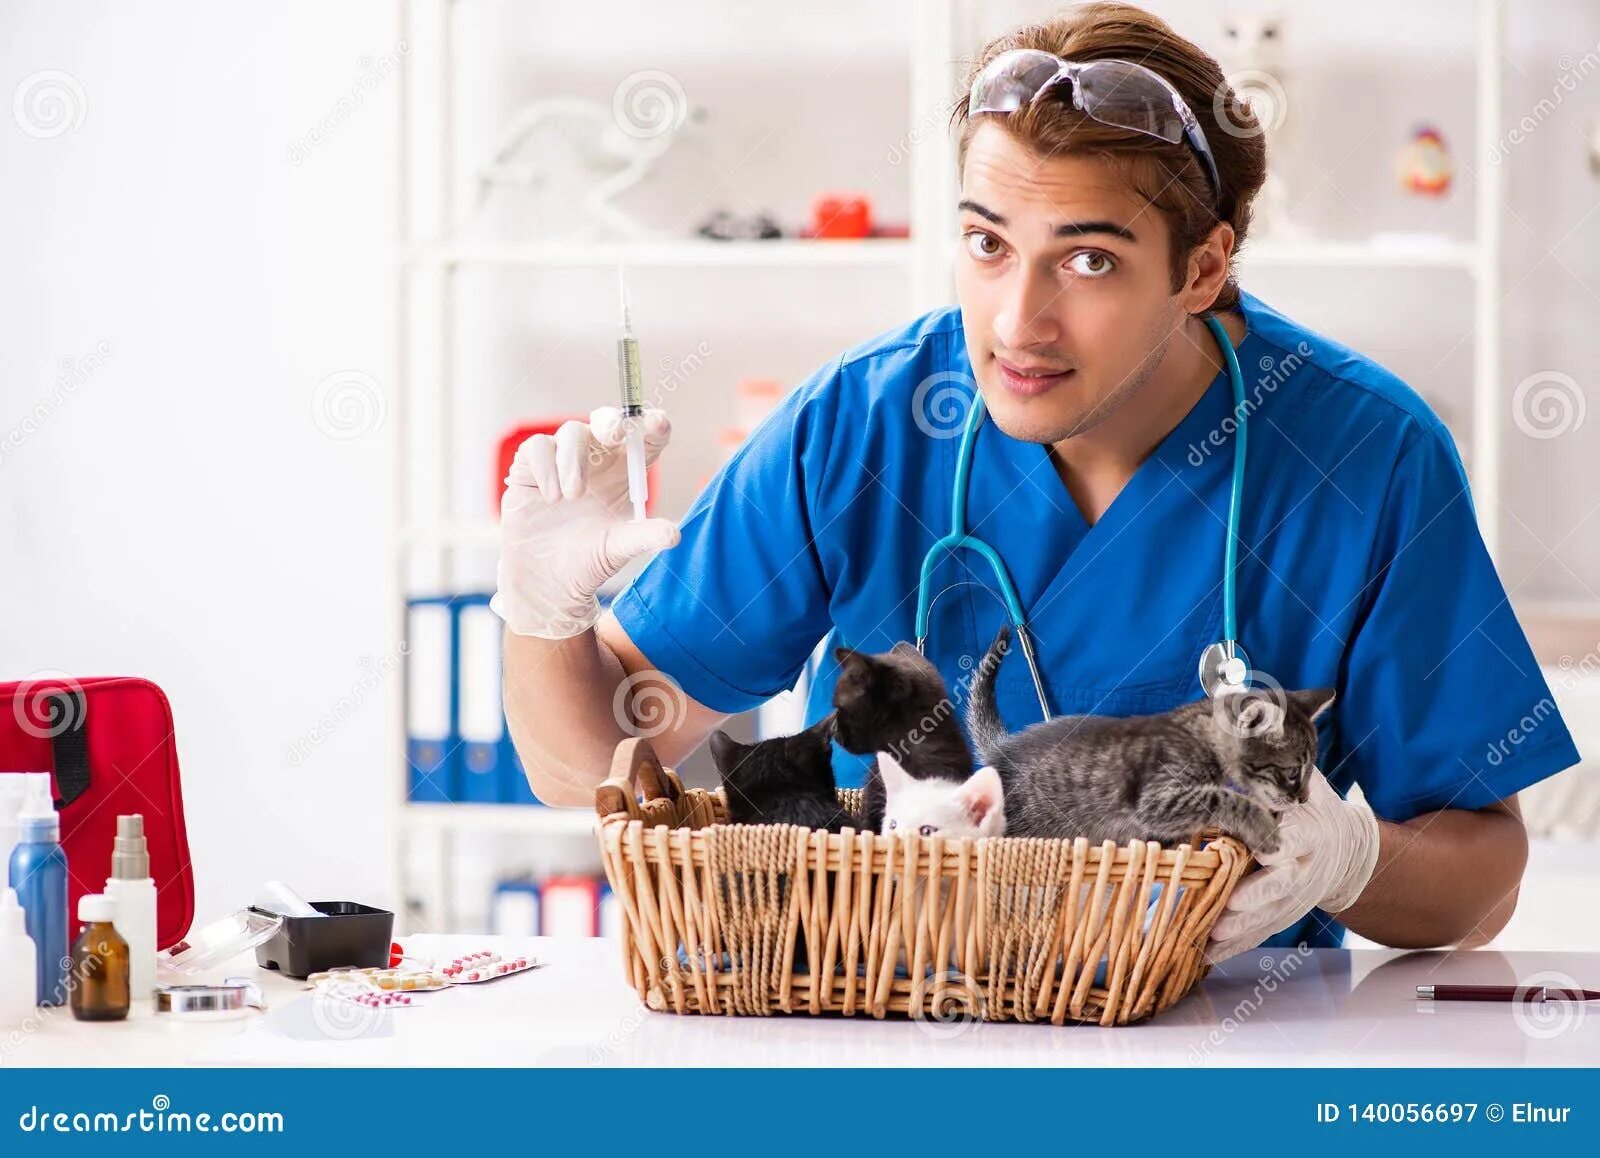 Ветеринар рецепты. Котенок у ветеринара. Ветеринар быт. Молодые мужчины ветеринары. Мужчина врач с кошечкой.